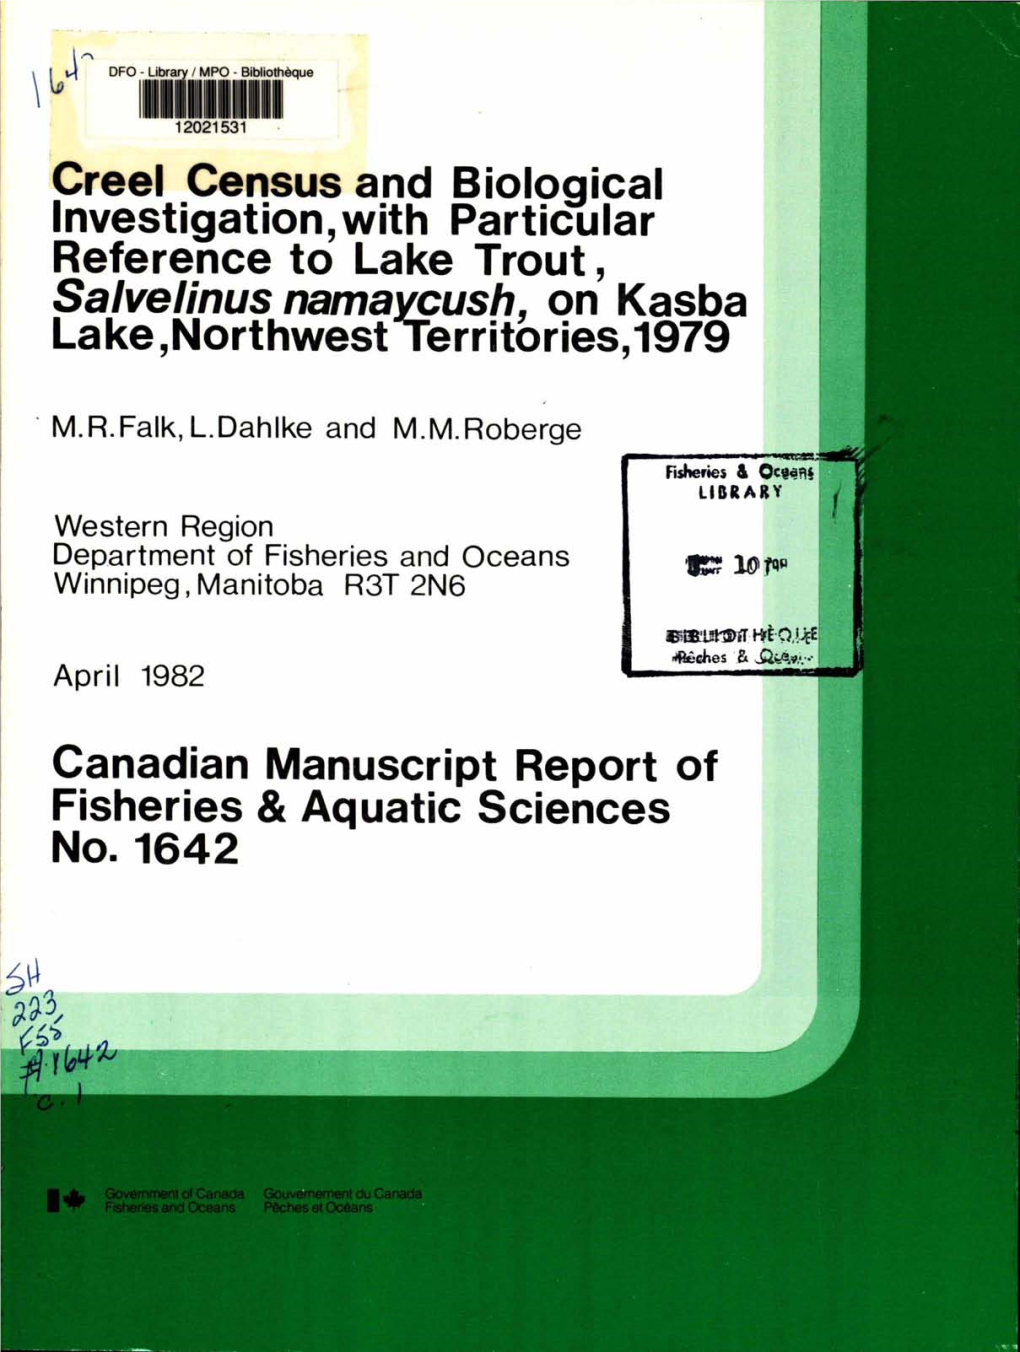 Canadian Manuscript Report of Fisheries and Aquatic Sciences No. 1642